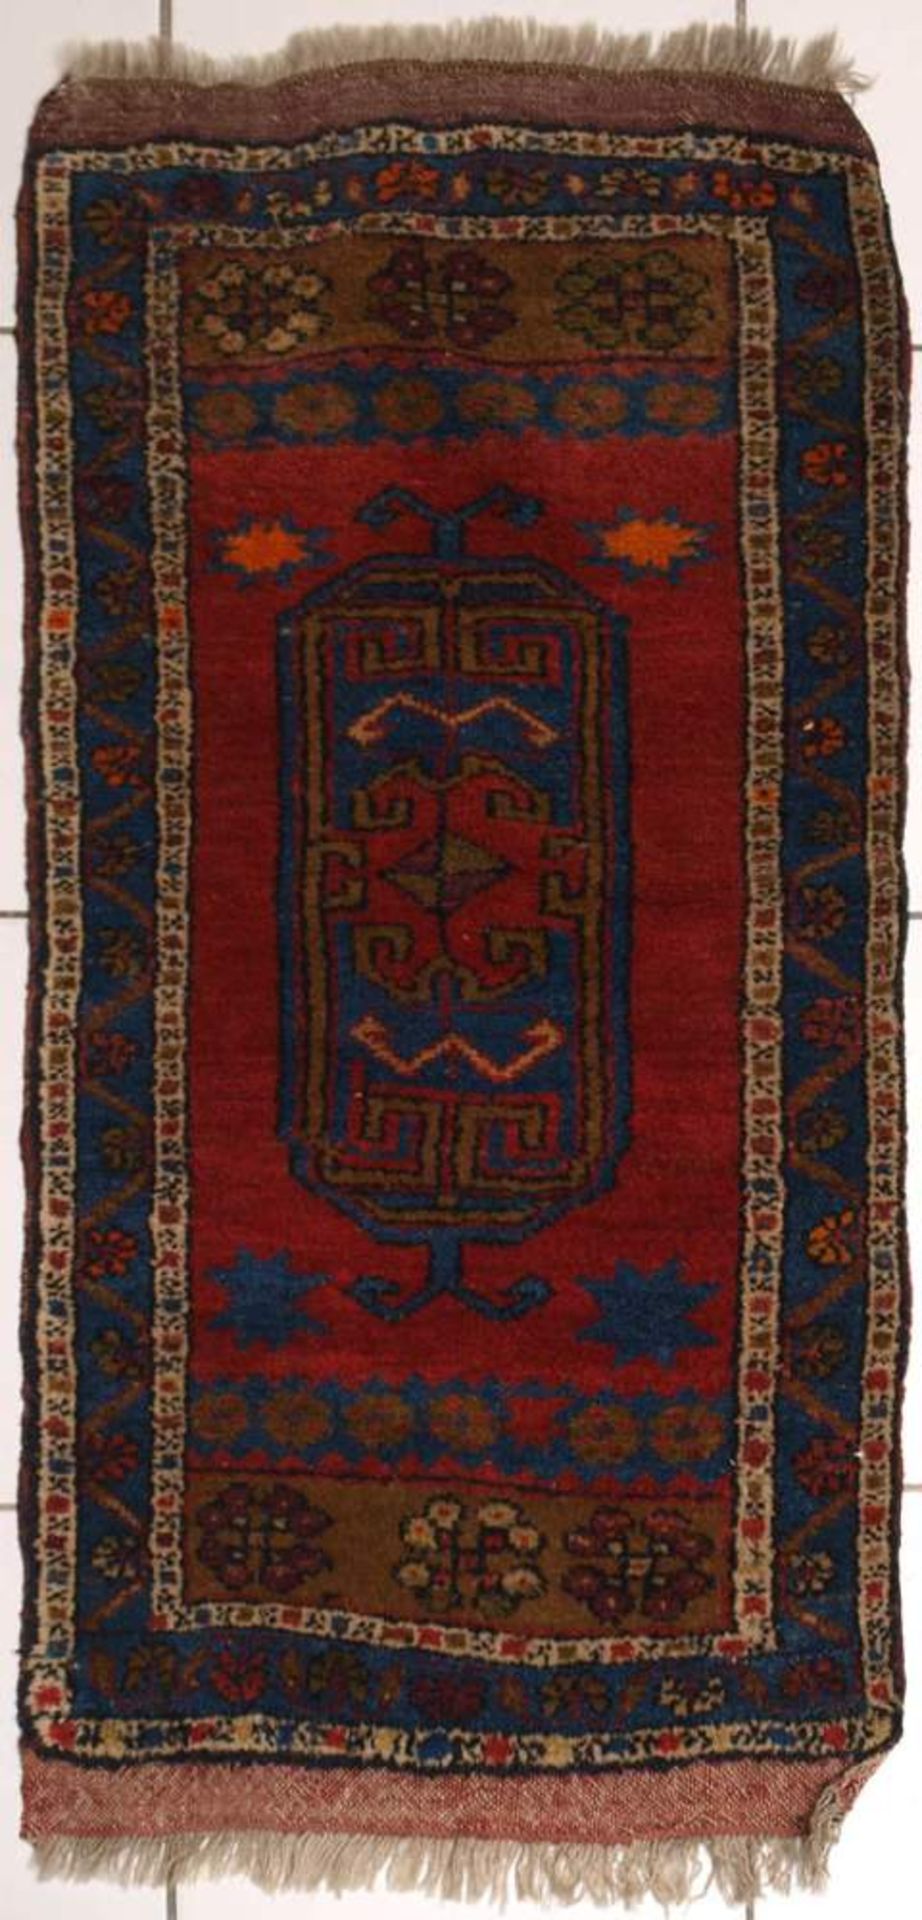 Gebetsteppich, türkisch, 19.Jhdt.Rotes Zentralfeld mit blaugrundigem Mirab. Blaugrundige Bordüre